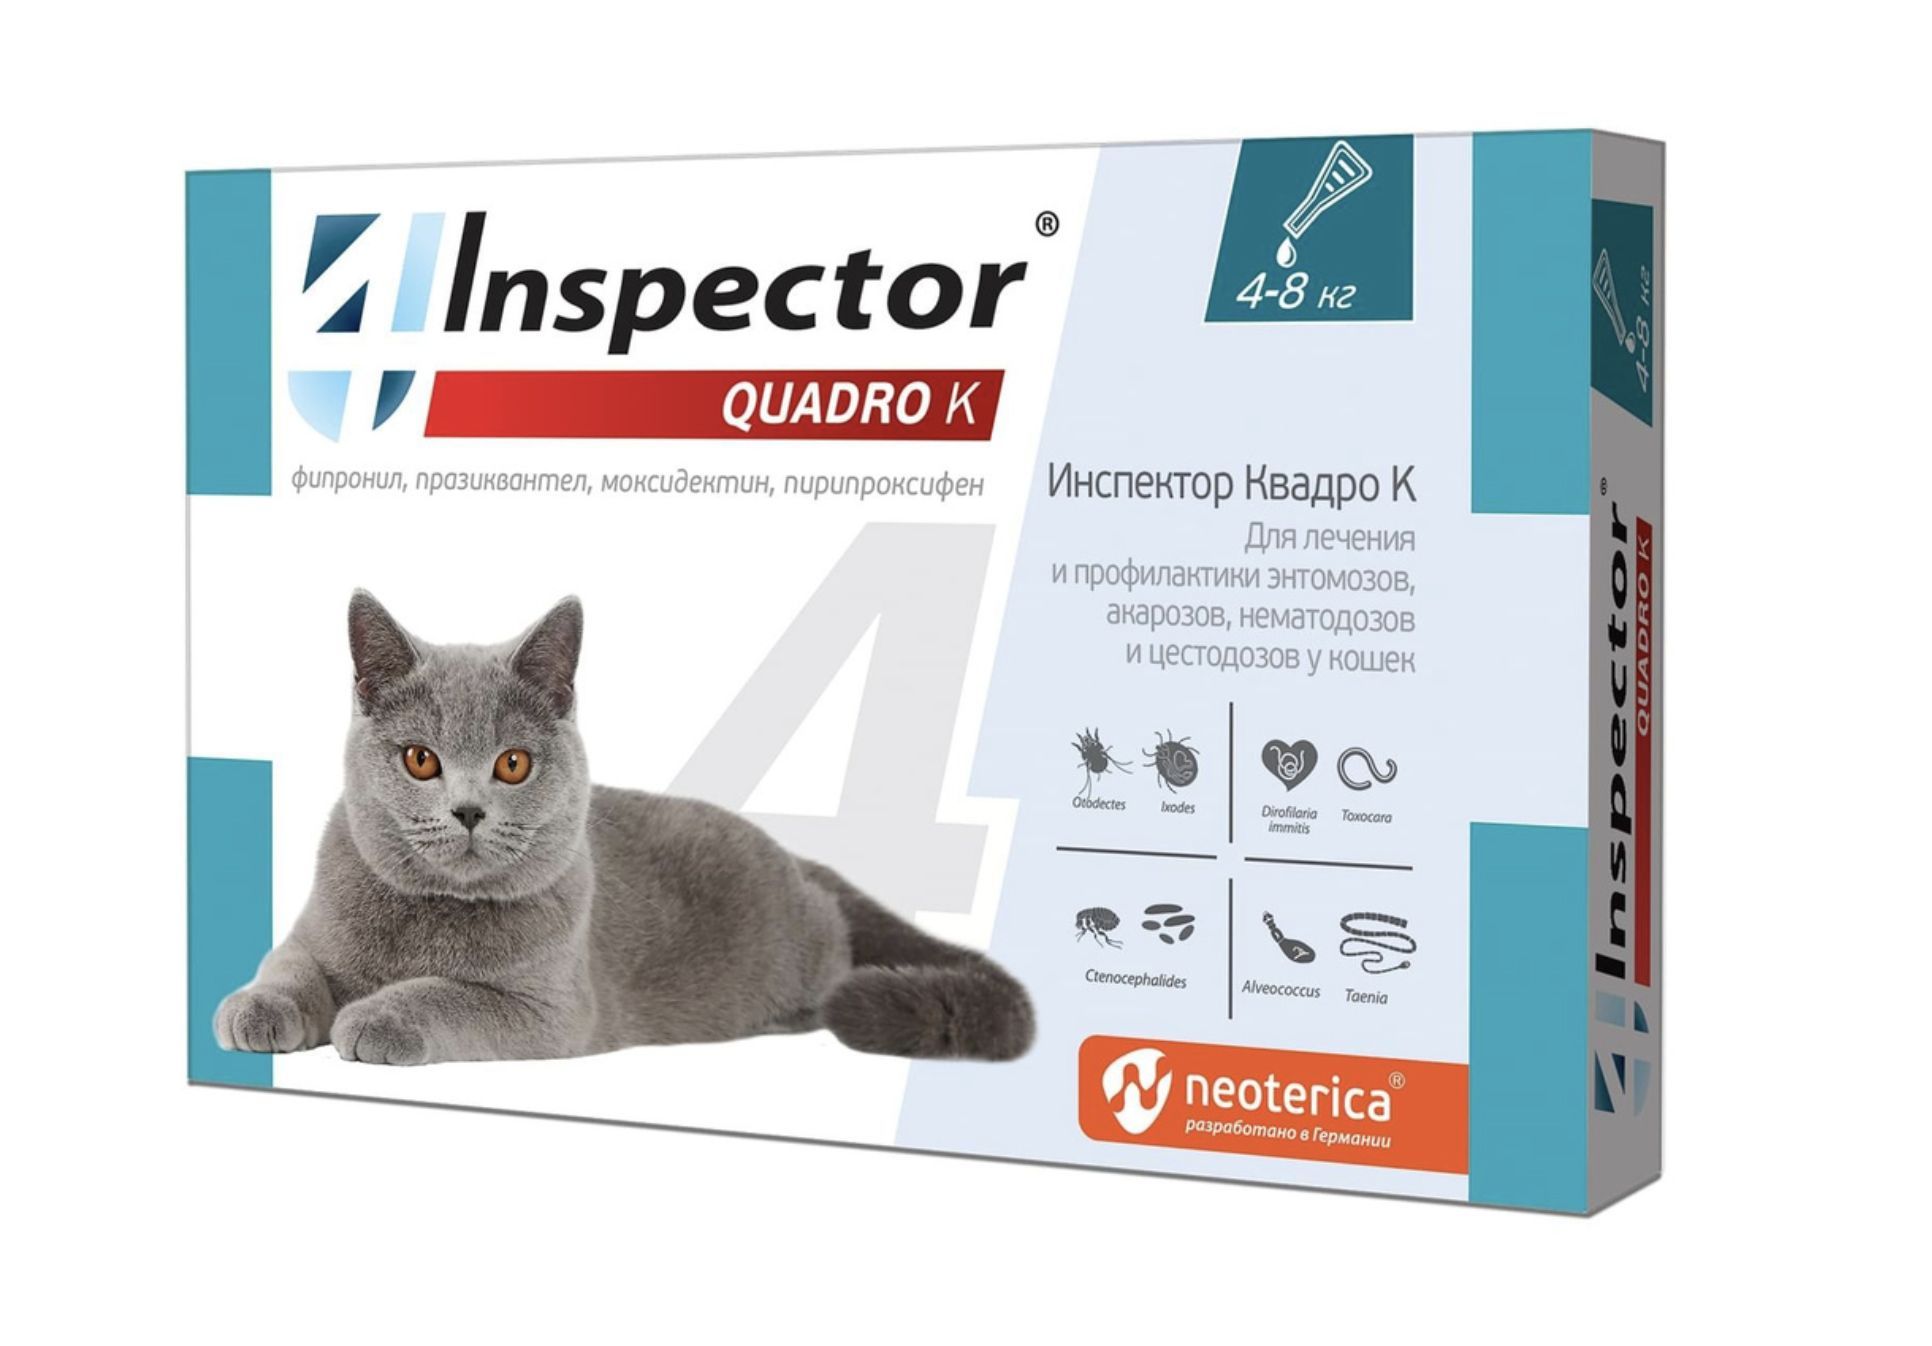 Капли от клещей помогают. Капли для кошек от блох и глистов Inspector. Инспектор Квадро капли для кошек. Инспектор капли для кошек 1-4 кг. Капли для кошек "Inspector Quadro" 1-4 кг от блох.